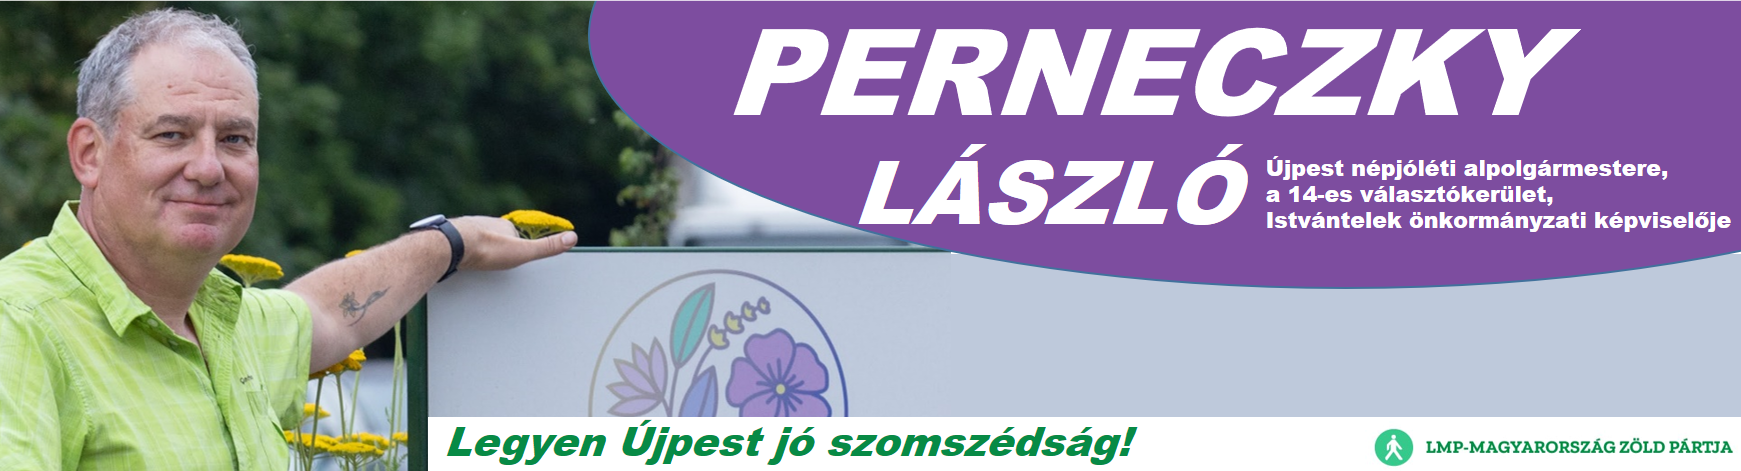 Perneczky László